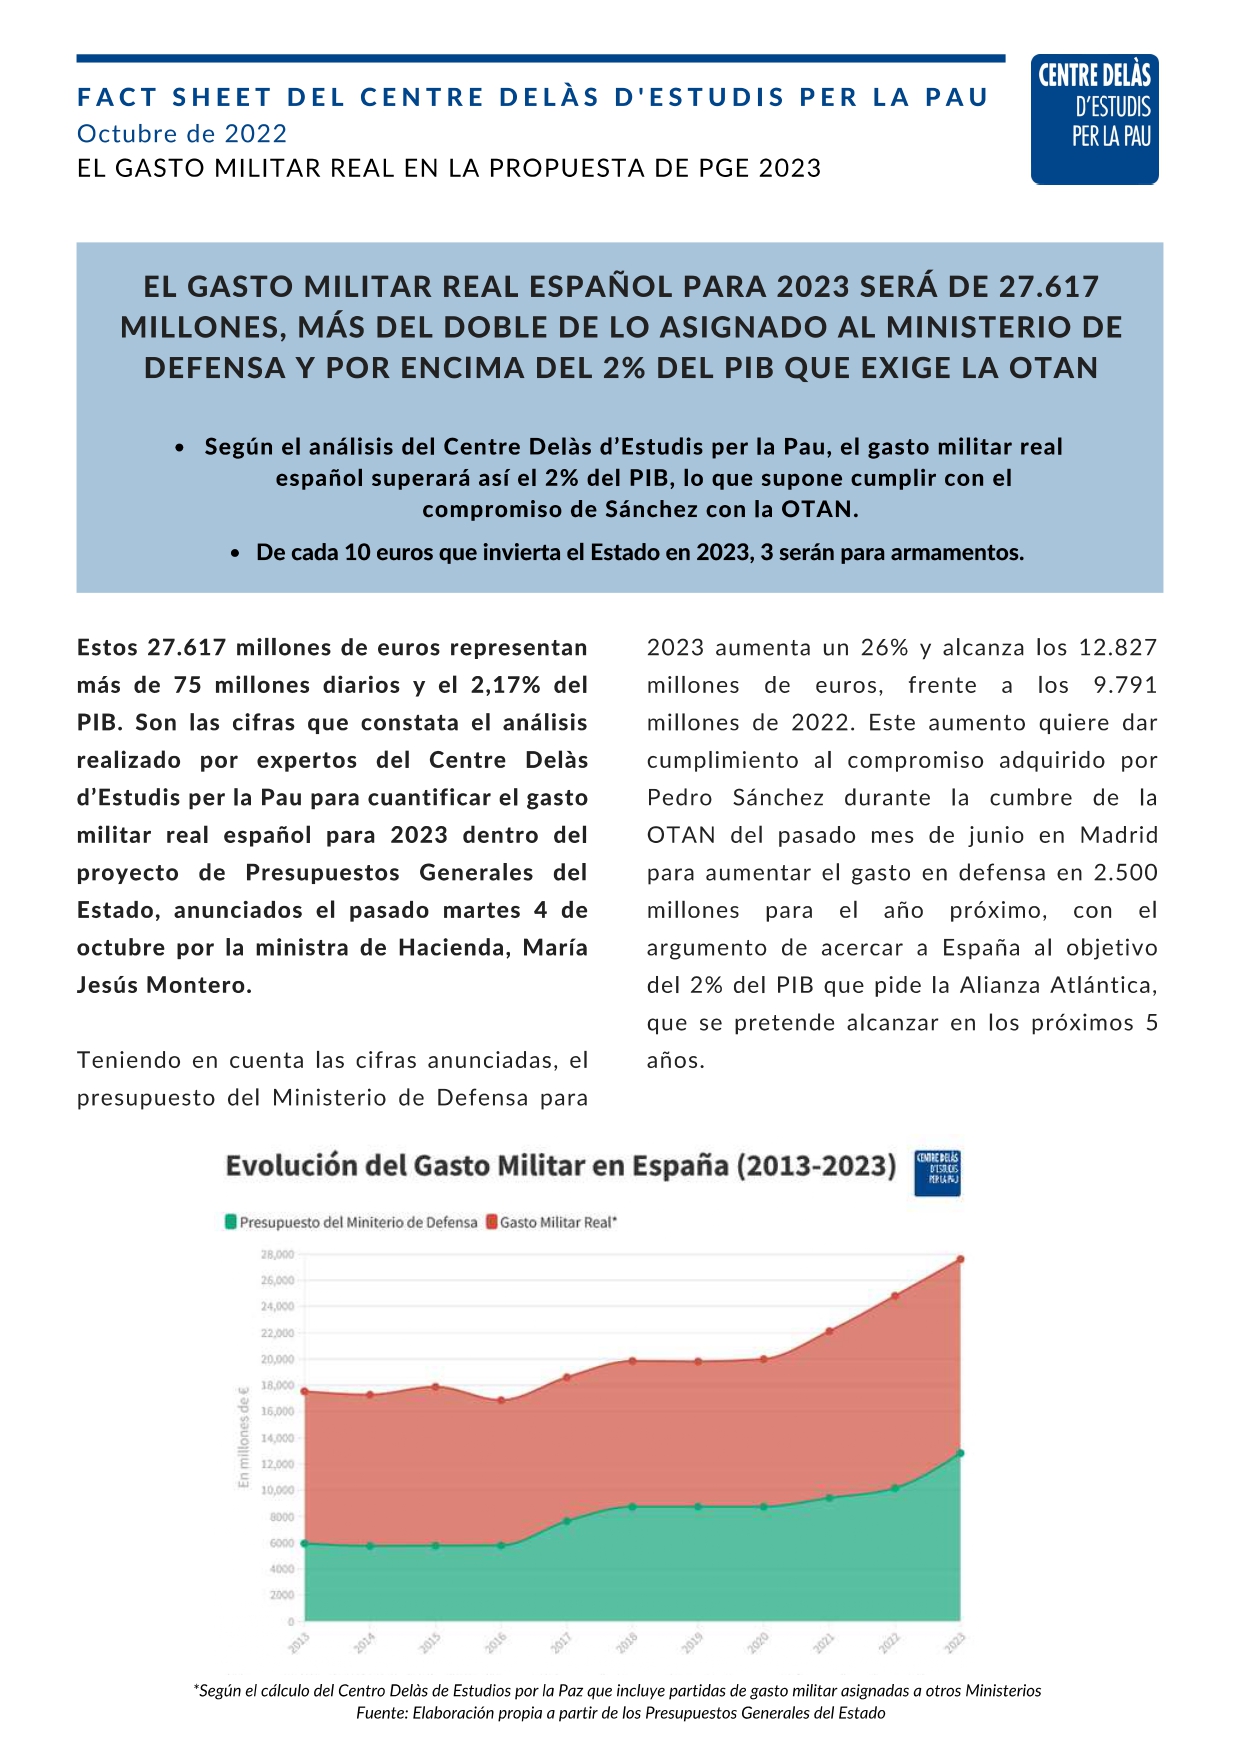 Nuevo Fact Sheet del Centre Delàs: «El gasto militar real español para 2023 será de 27.617 millones, más del doble de lo asignado al Ministerio de Defensa y por encima del 2% del PIB que exige la OTAN»